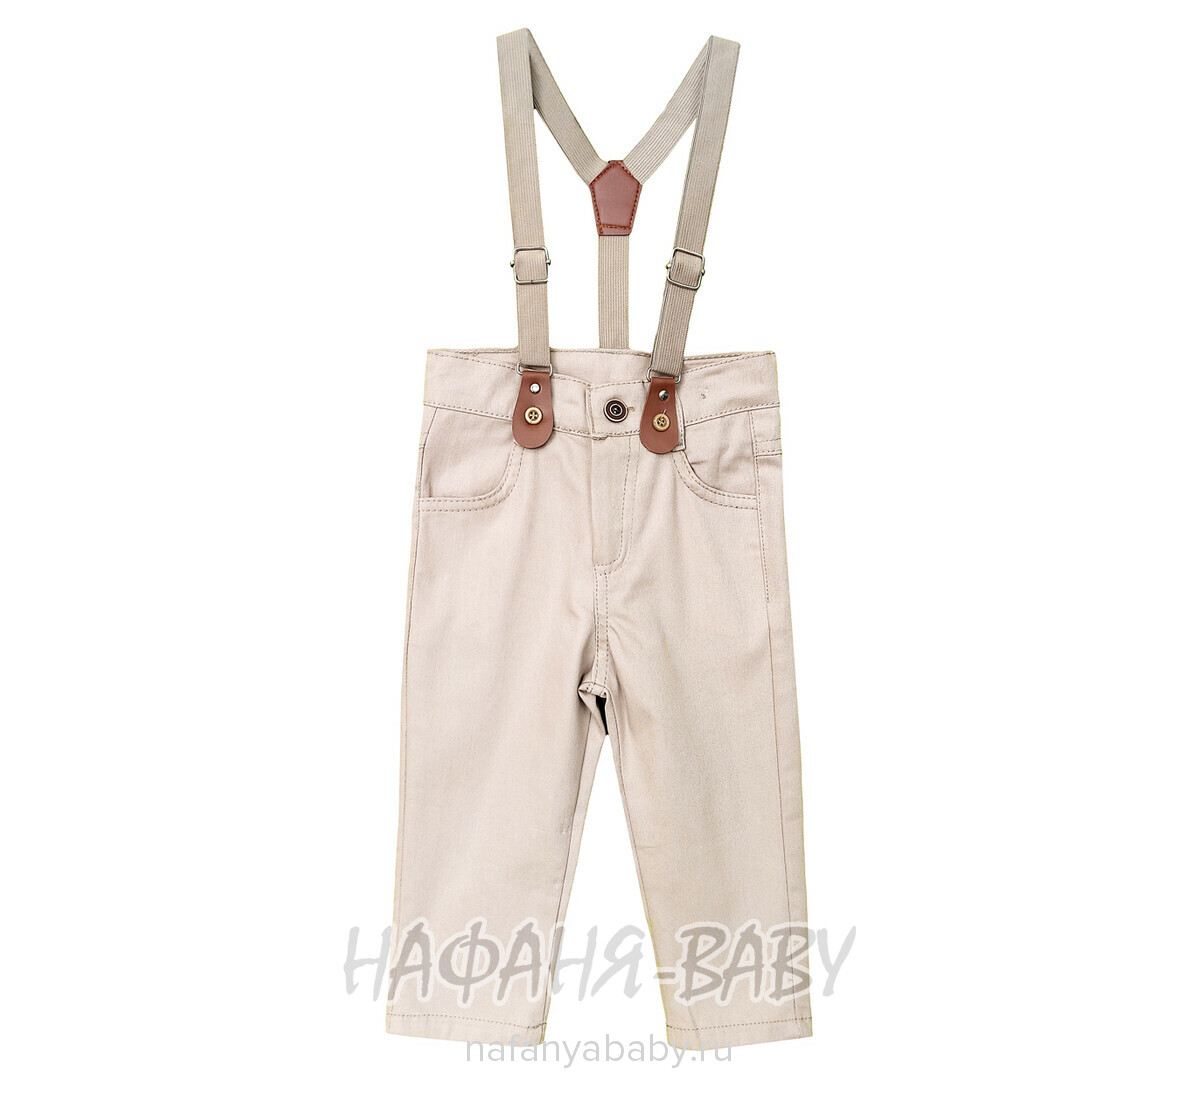 Детский костюм (рубашка + брюки) EFBEY арт. 3087, 1-4 года, цвет белый с бежевым, оптом Турция